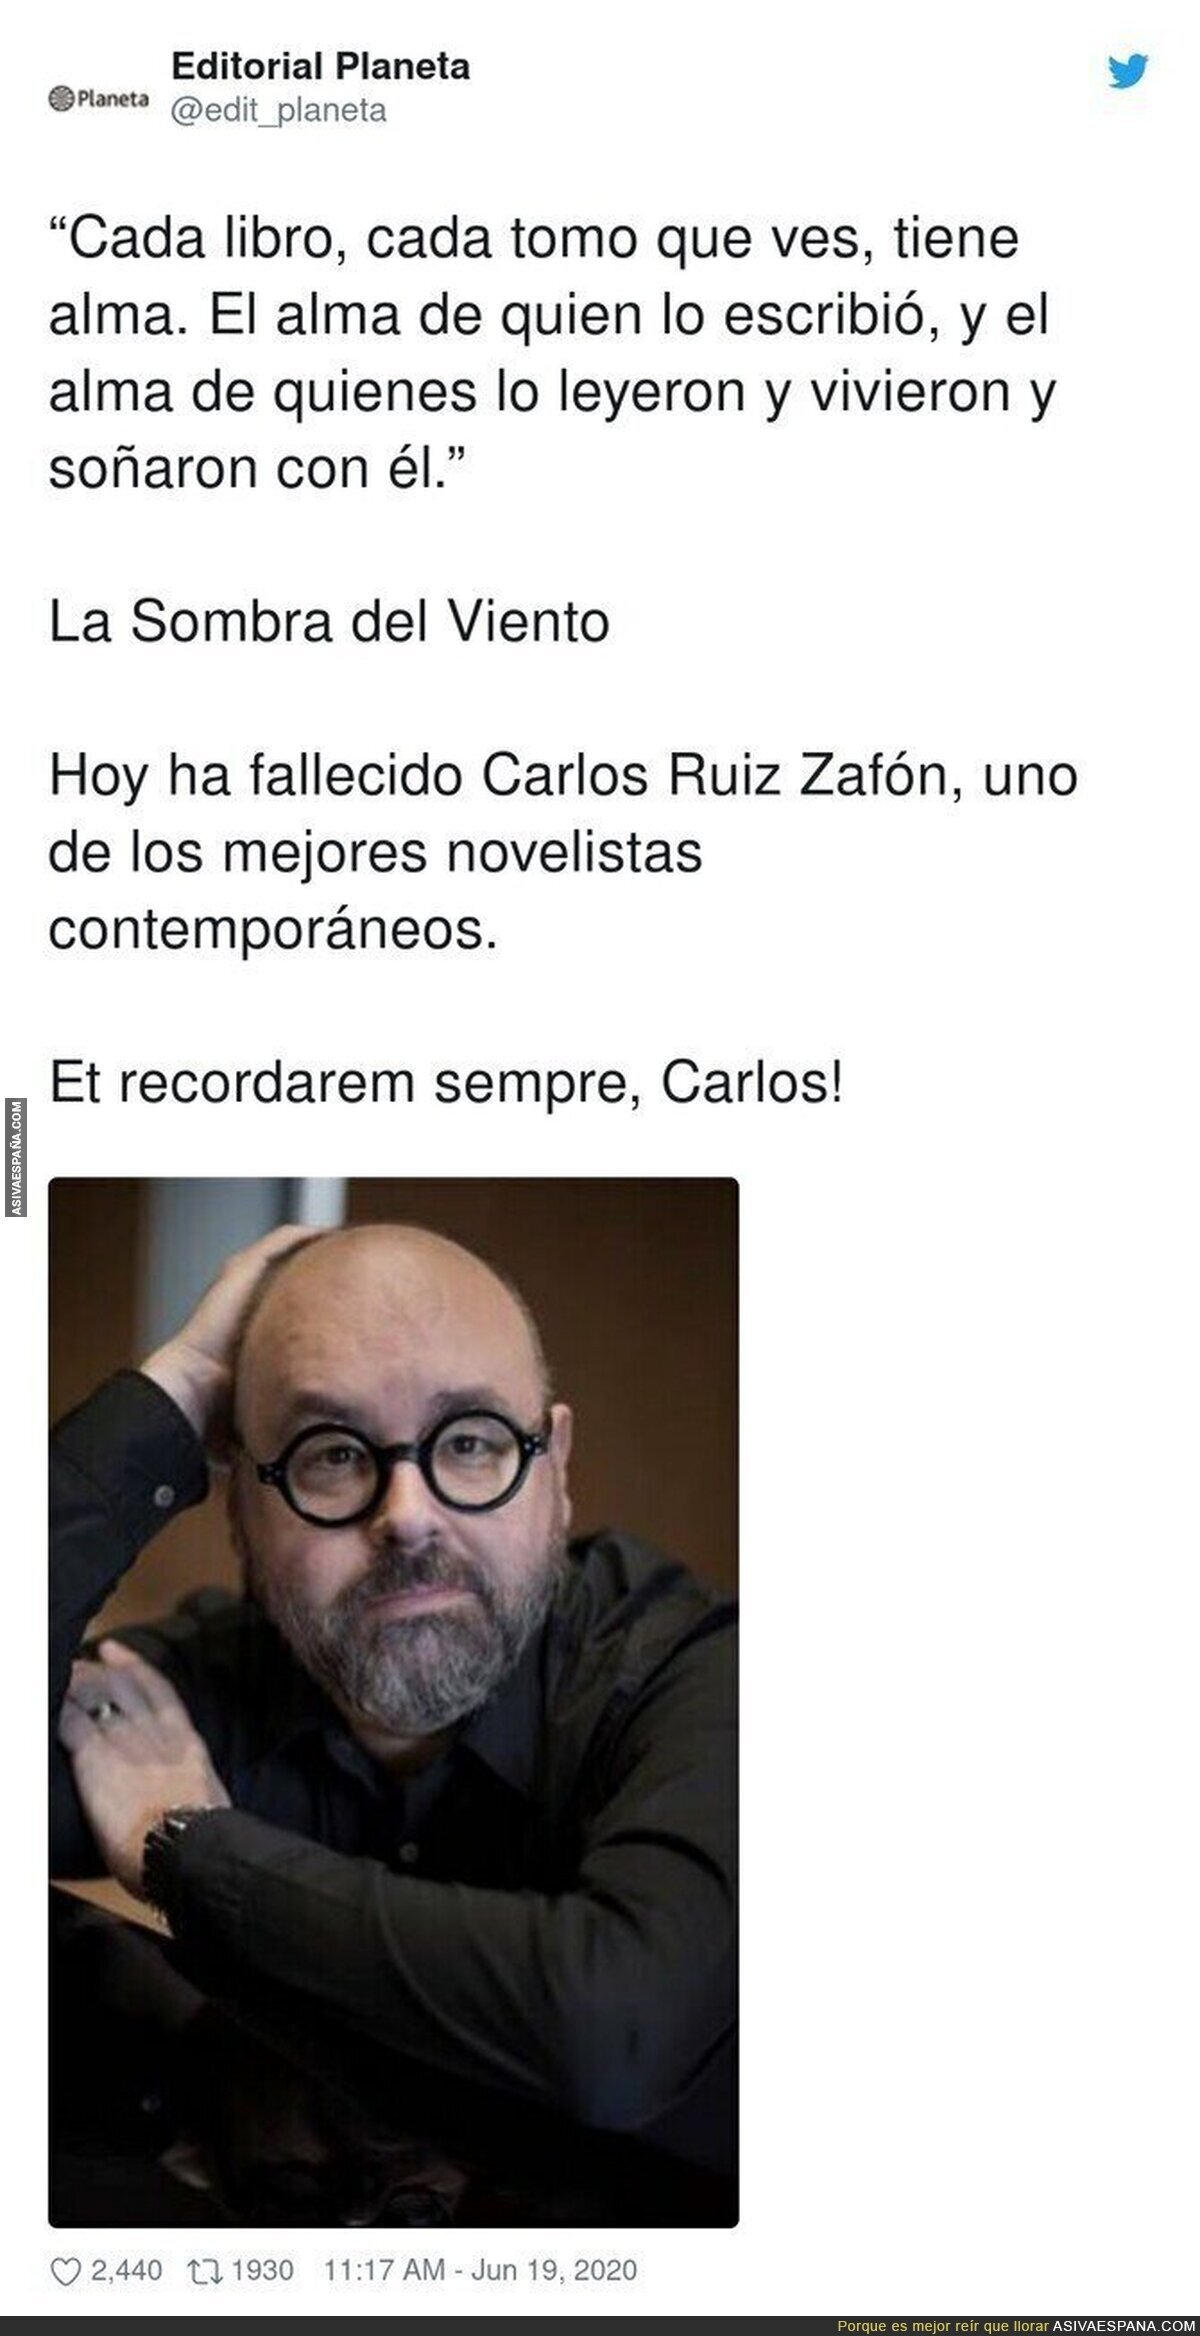 Tremenda pérdida hemos sufrido. Descanse en paz, Carlos Ruiz Zafón